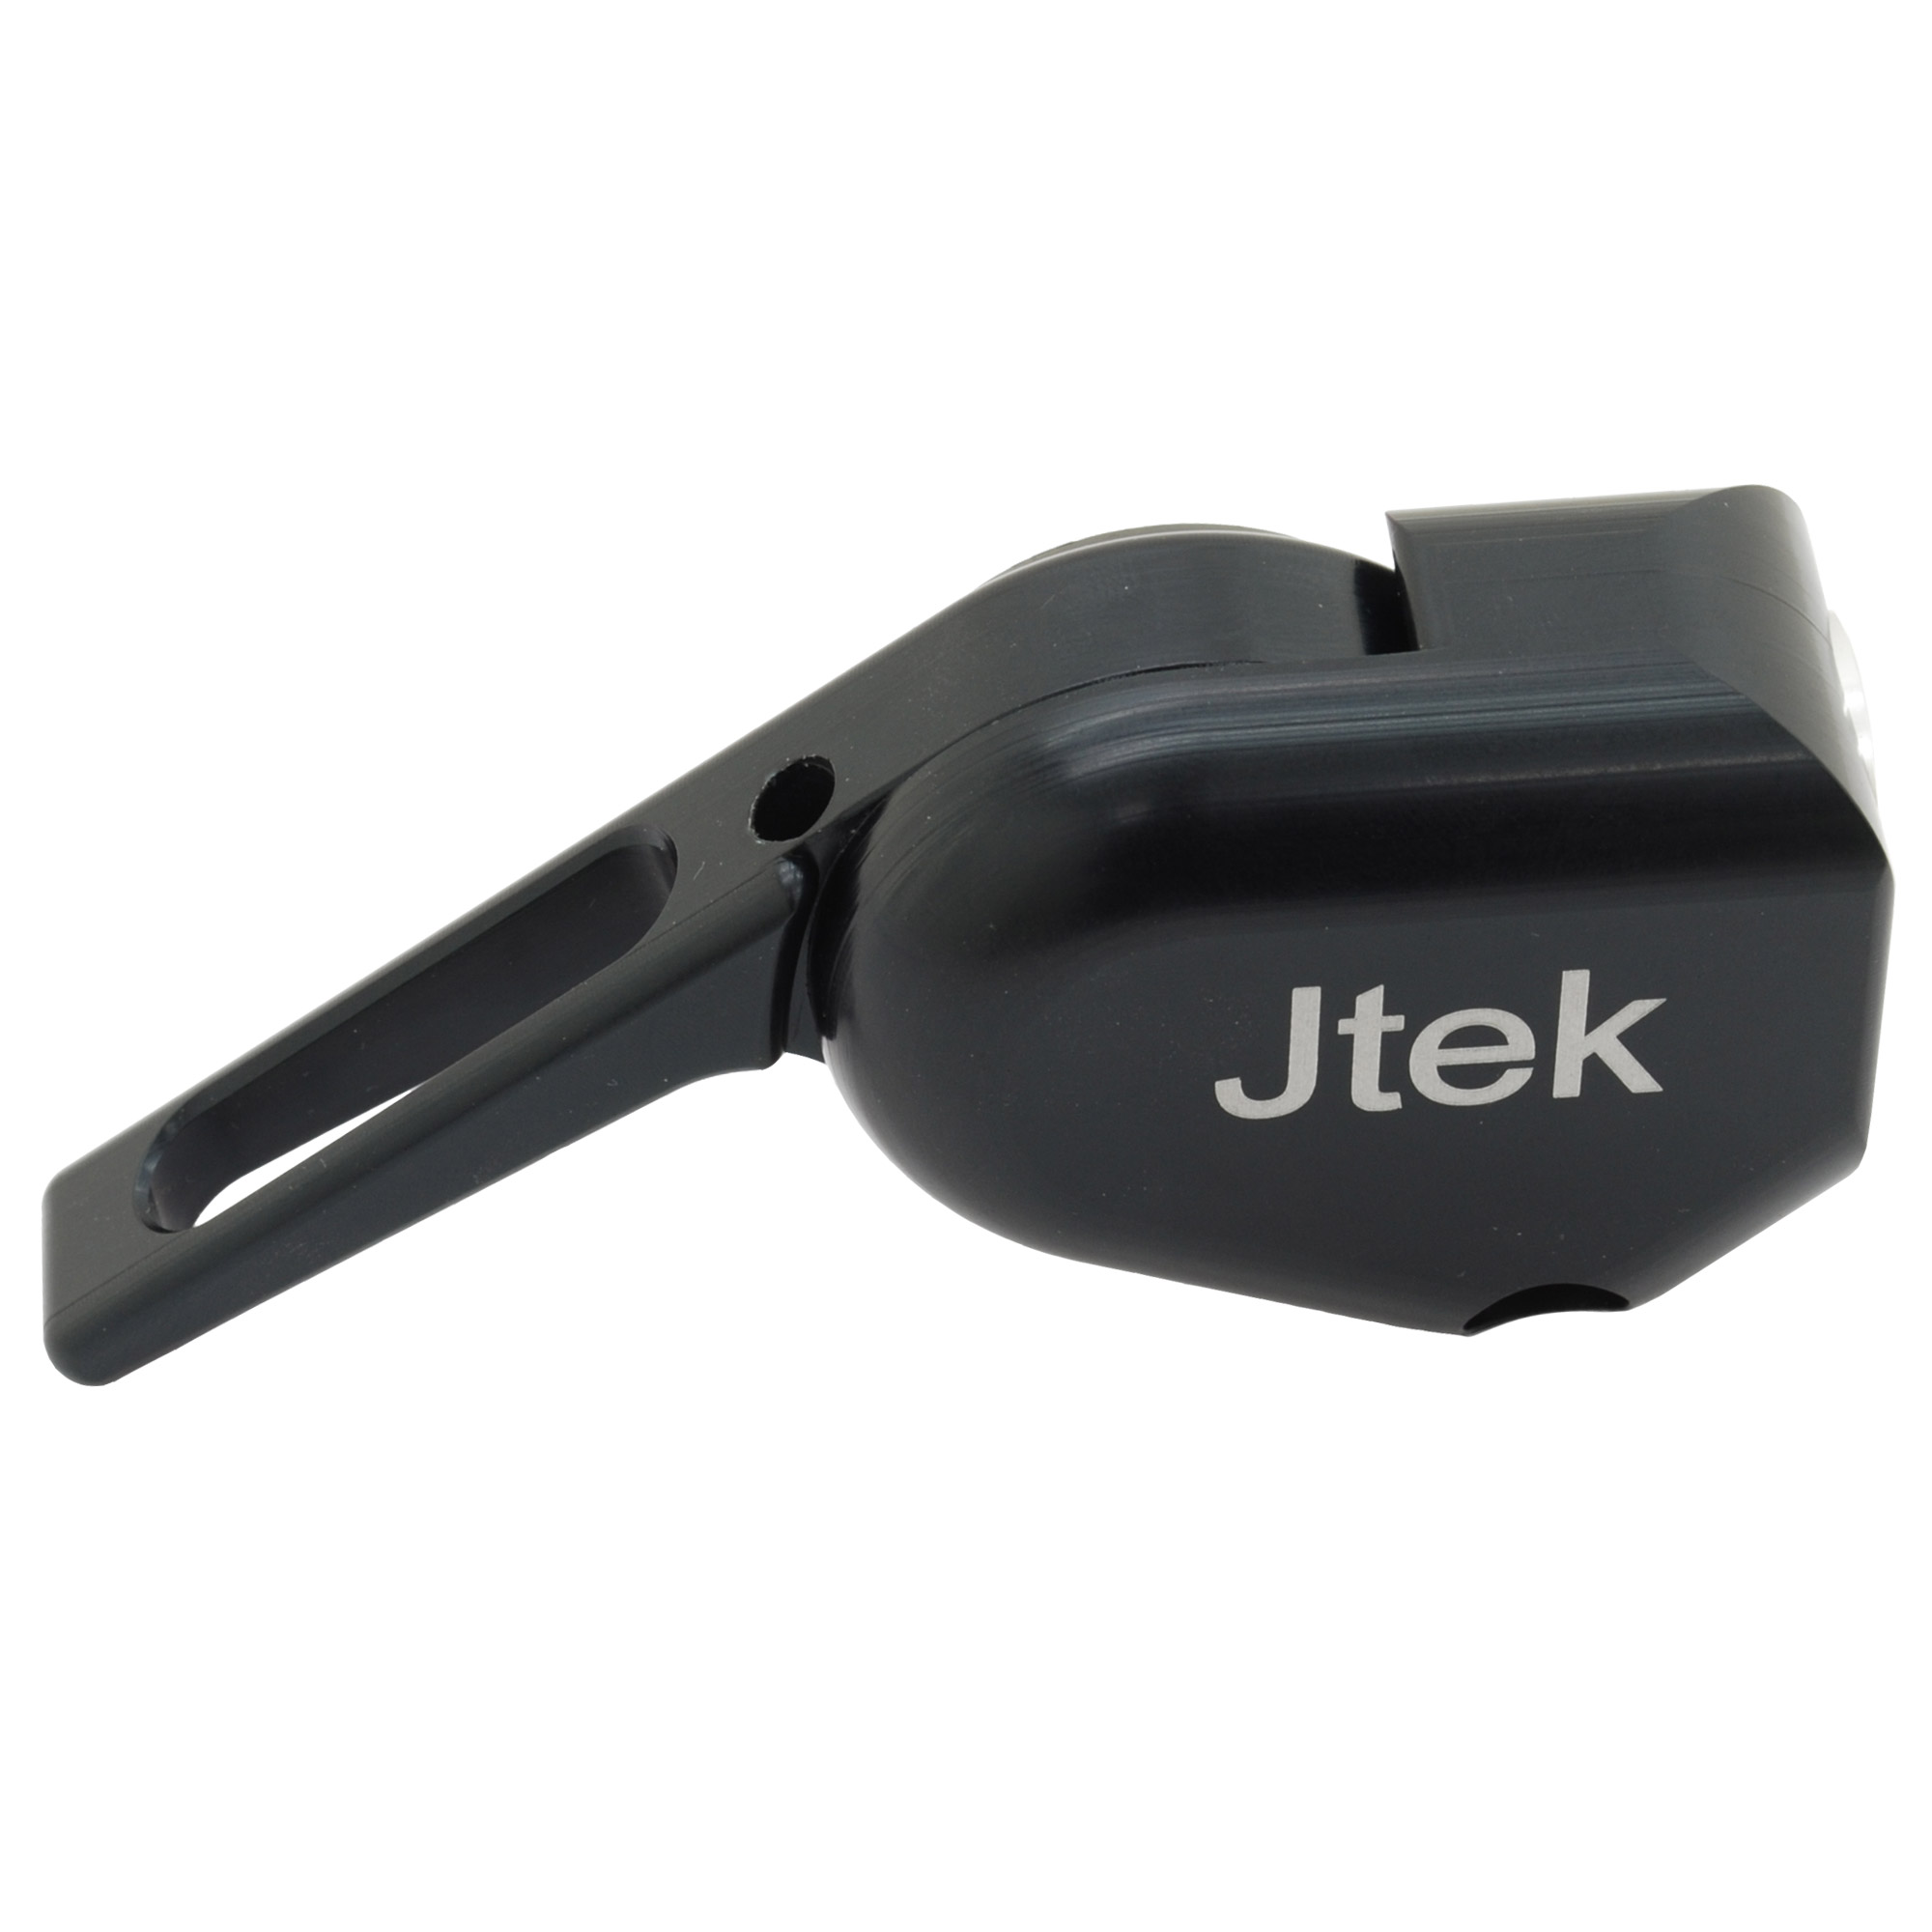 Jtek 11 Speed Bar End Shifter picture